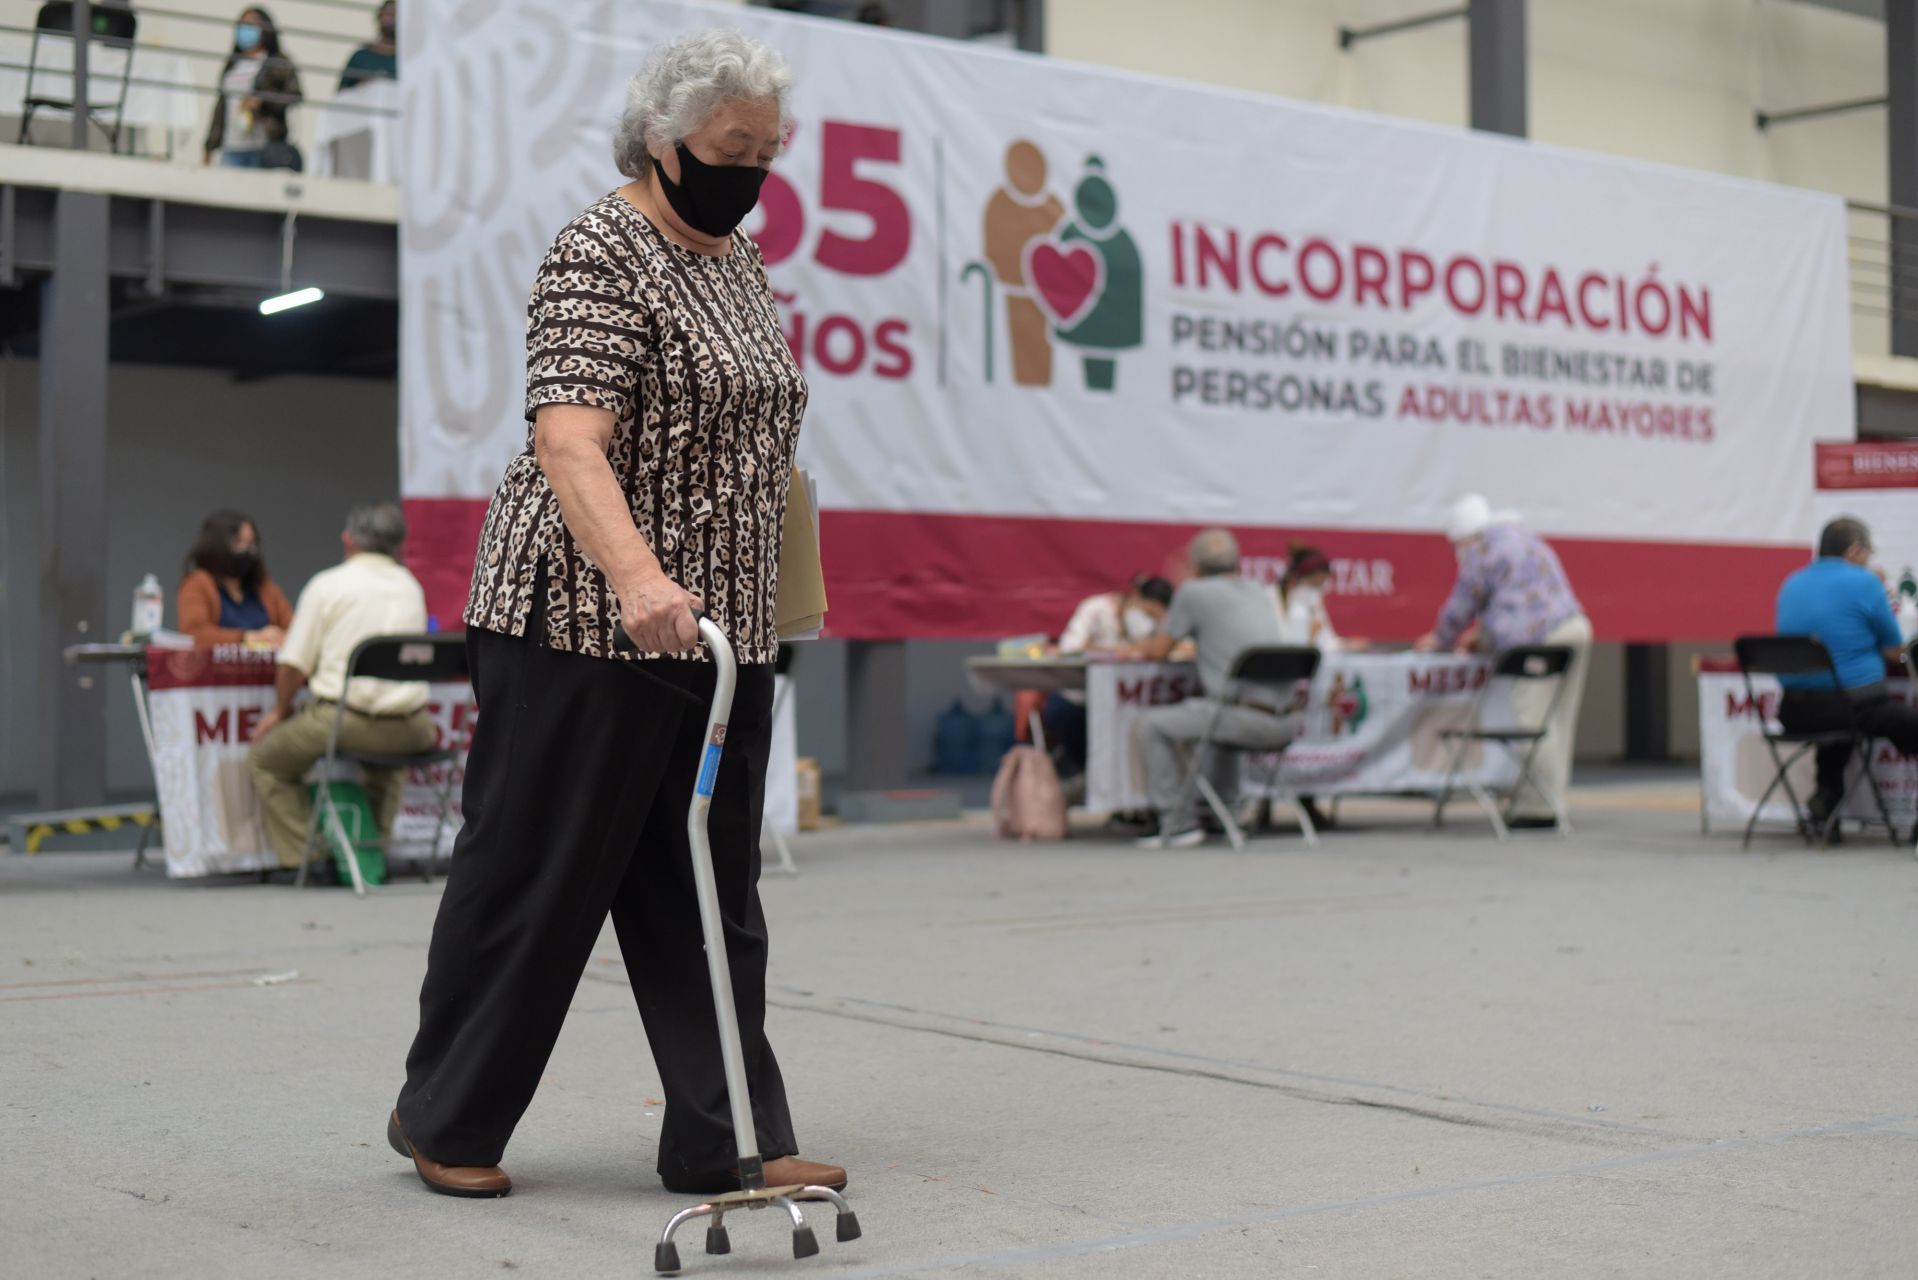 Incorporación de adultos mayores de 65 años a los programas sociales de la Secretaría de Bienestar (Fotos: Yerania Rolón/CUARTOSCURO)